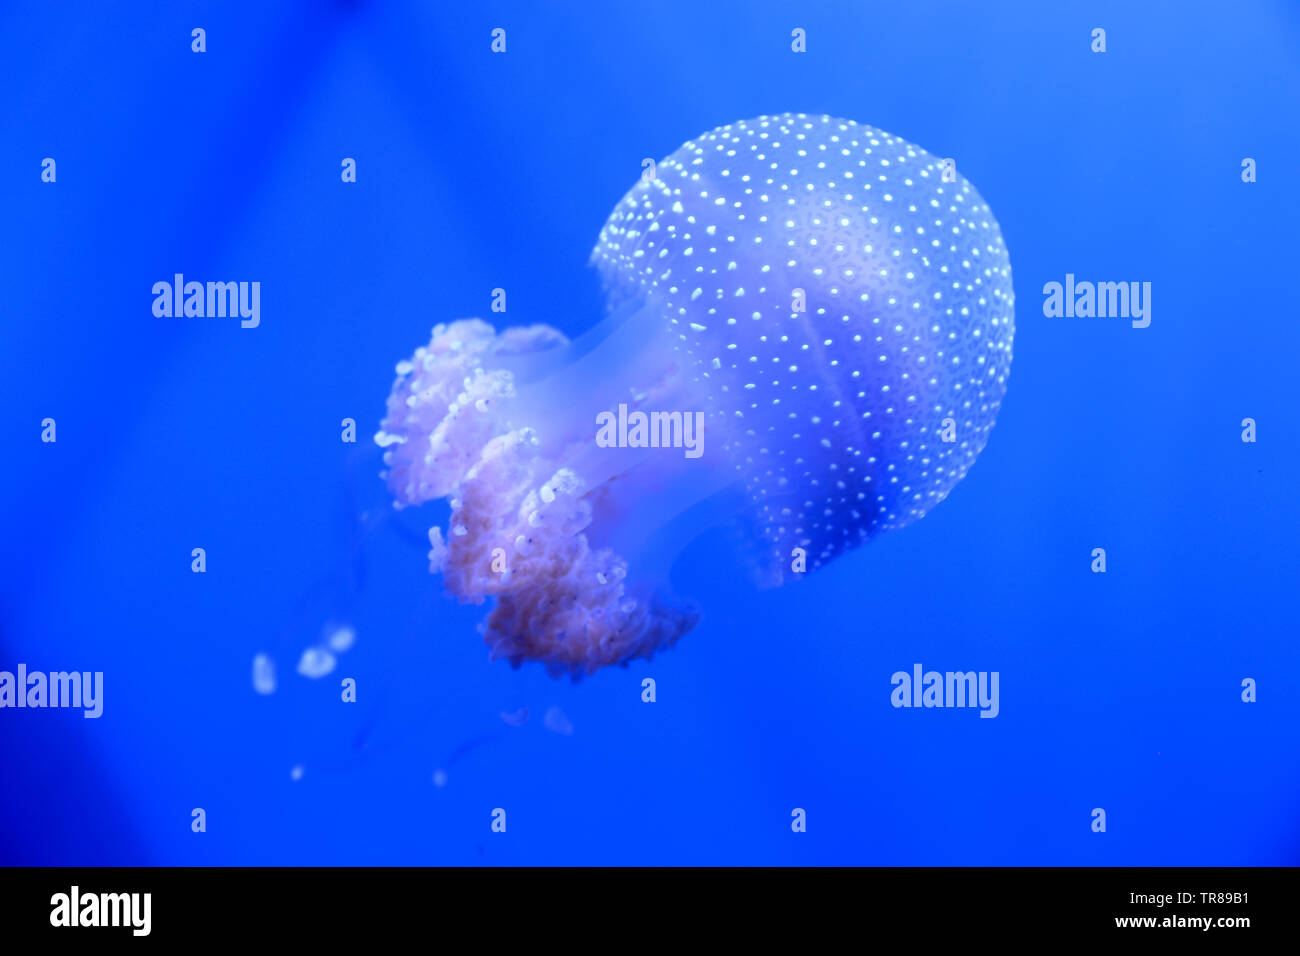 White-spotted meduse nuotare intorno come una campana galleggiante come è noto anche come. Foto Stock